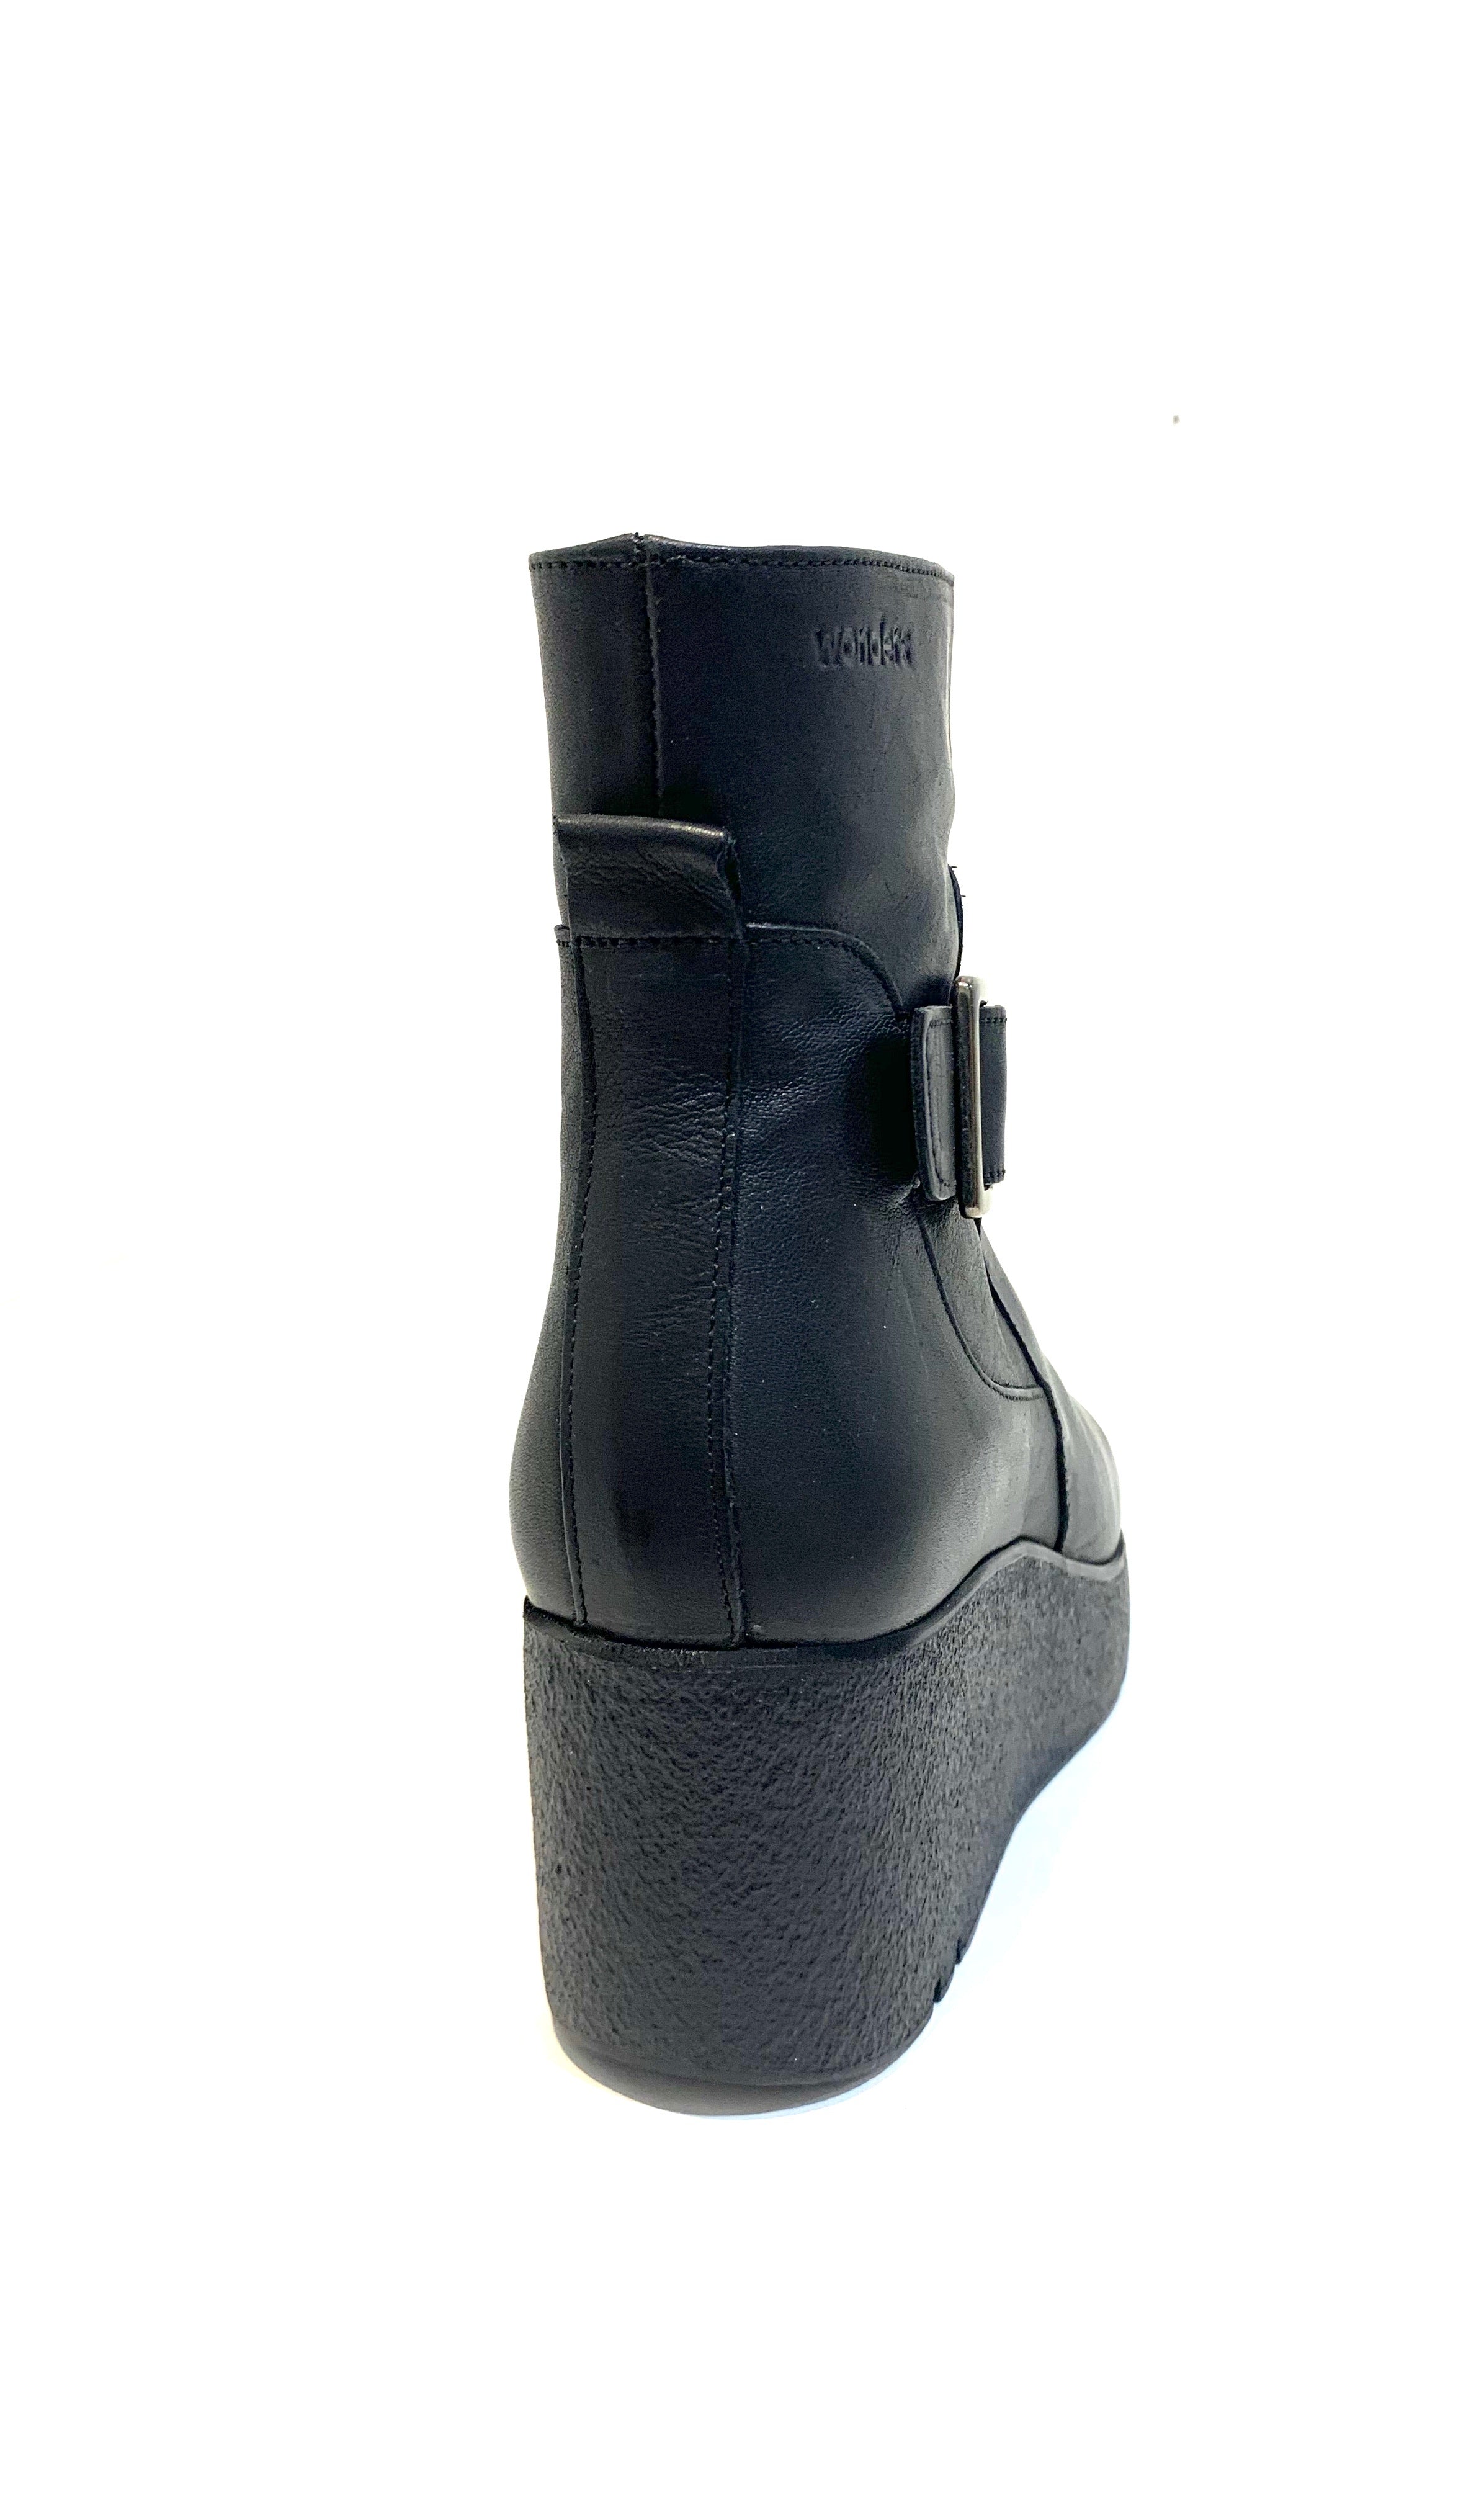 Wonders H-3208 Black Ankle Boot Wedge Zip Made In Spain